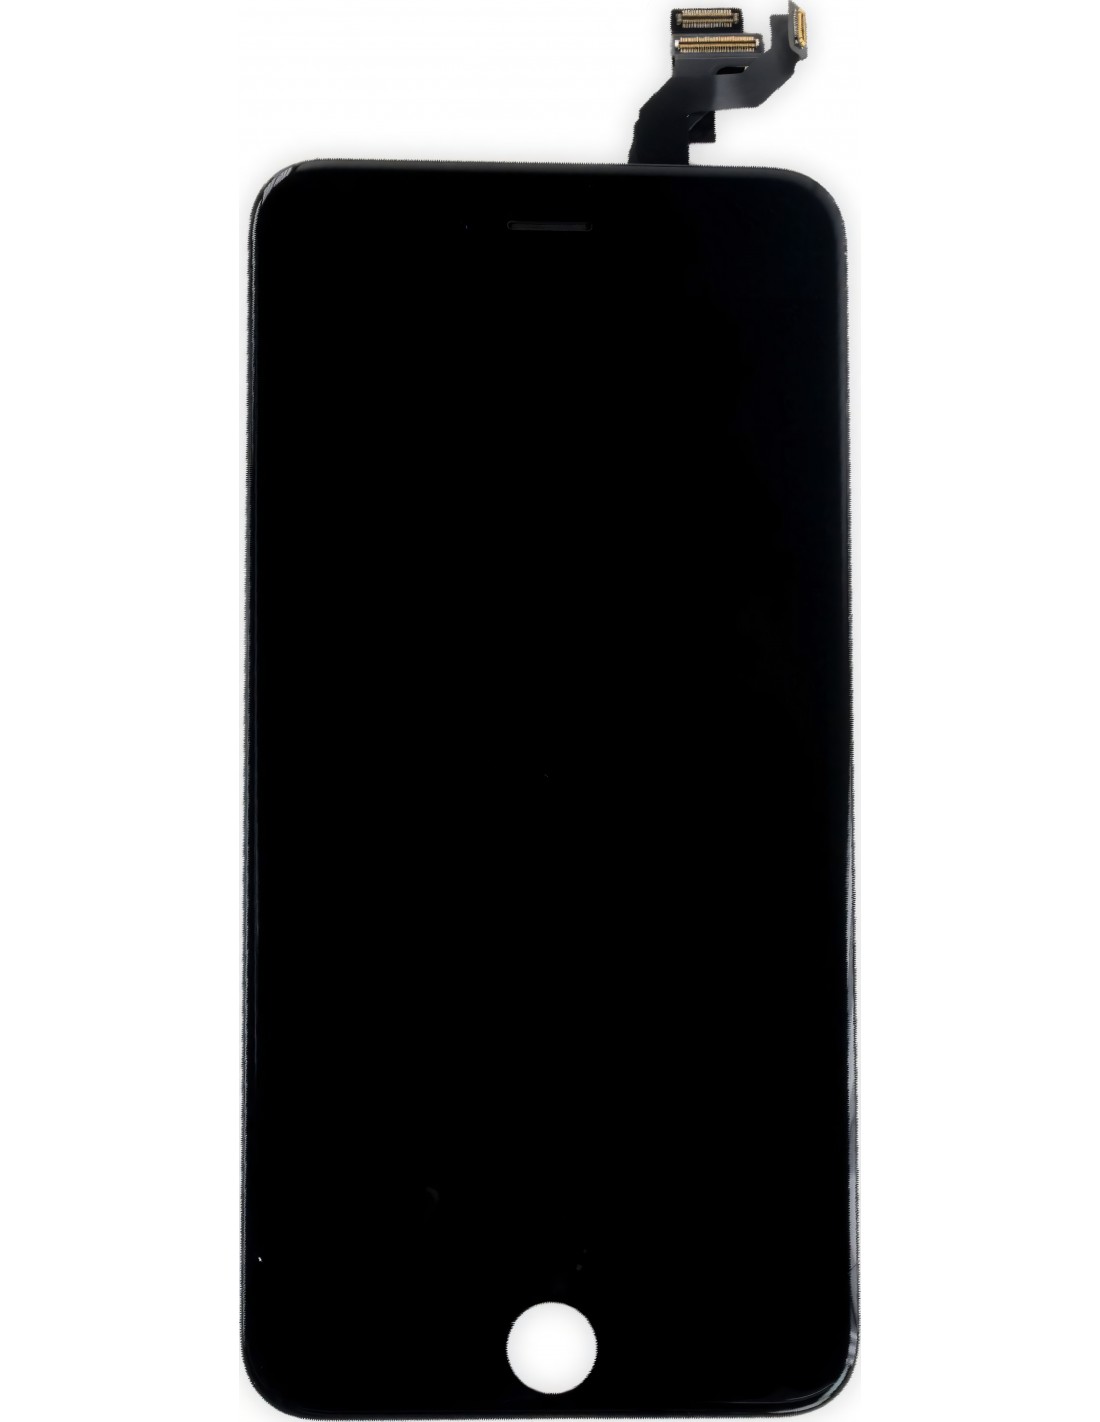 Ecran iPhone 6 Plus noir - Pièces détachées iPhone 6 Plus